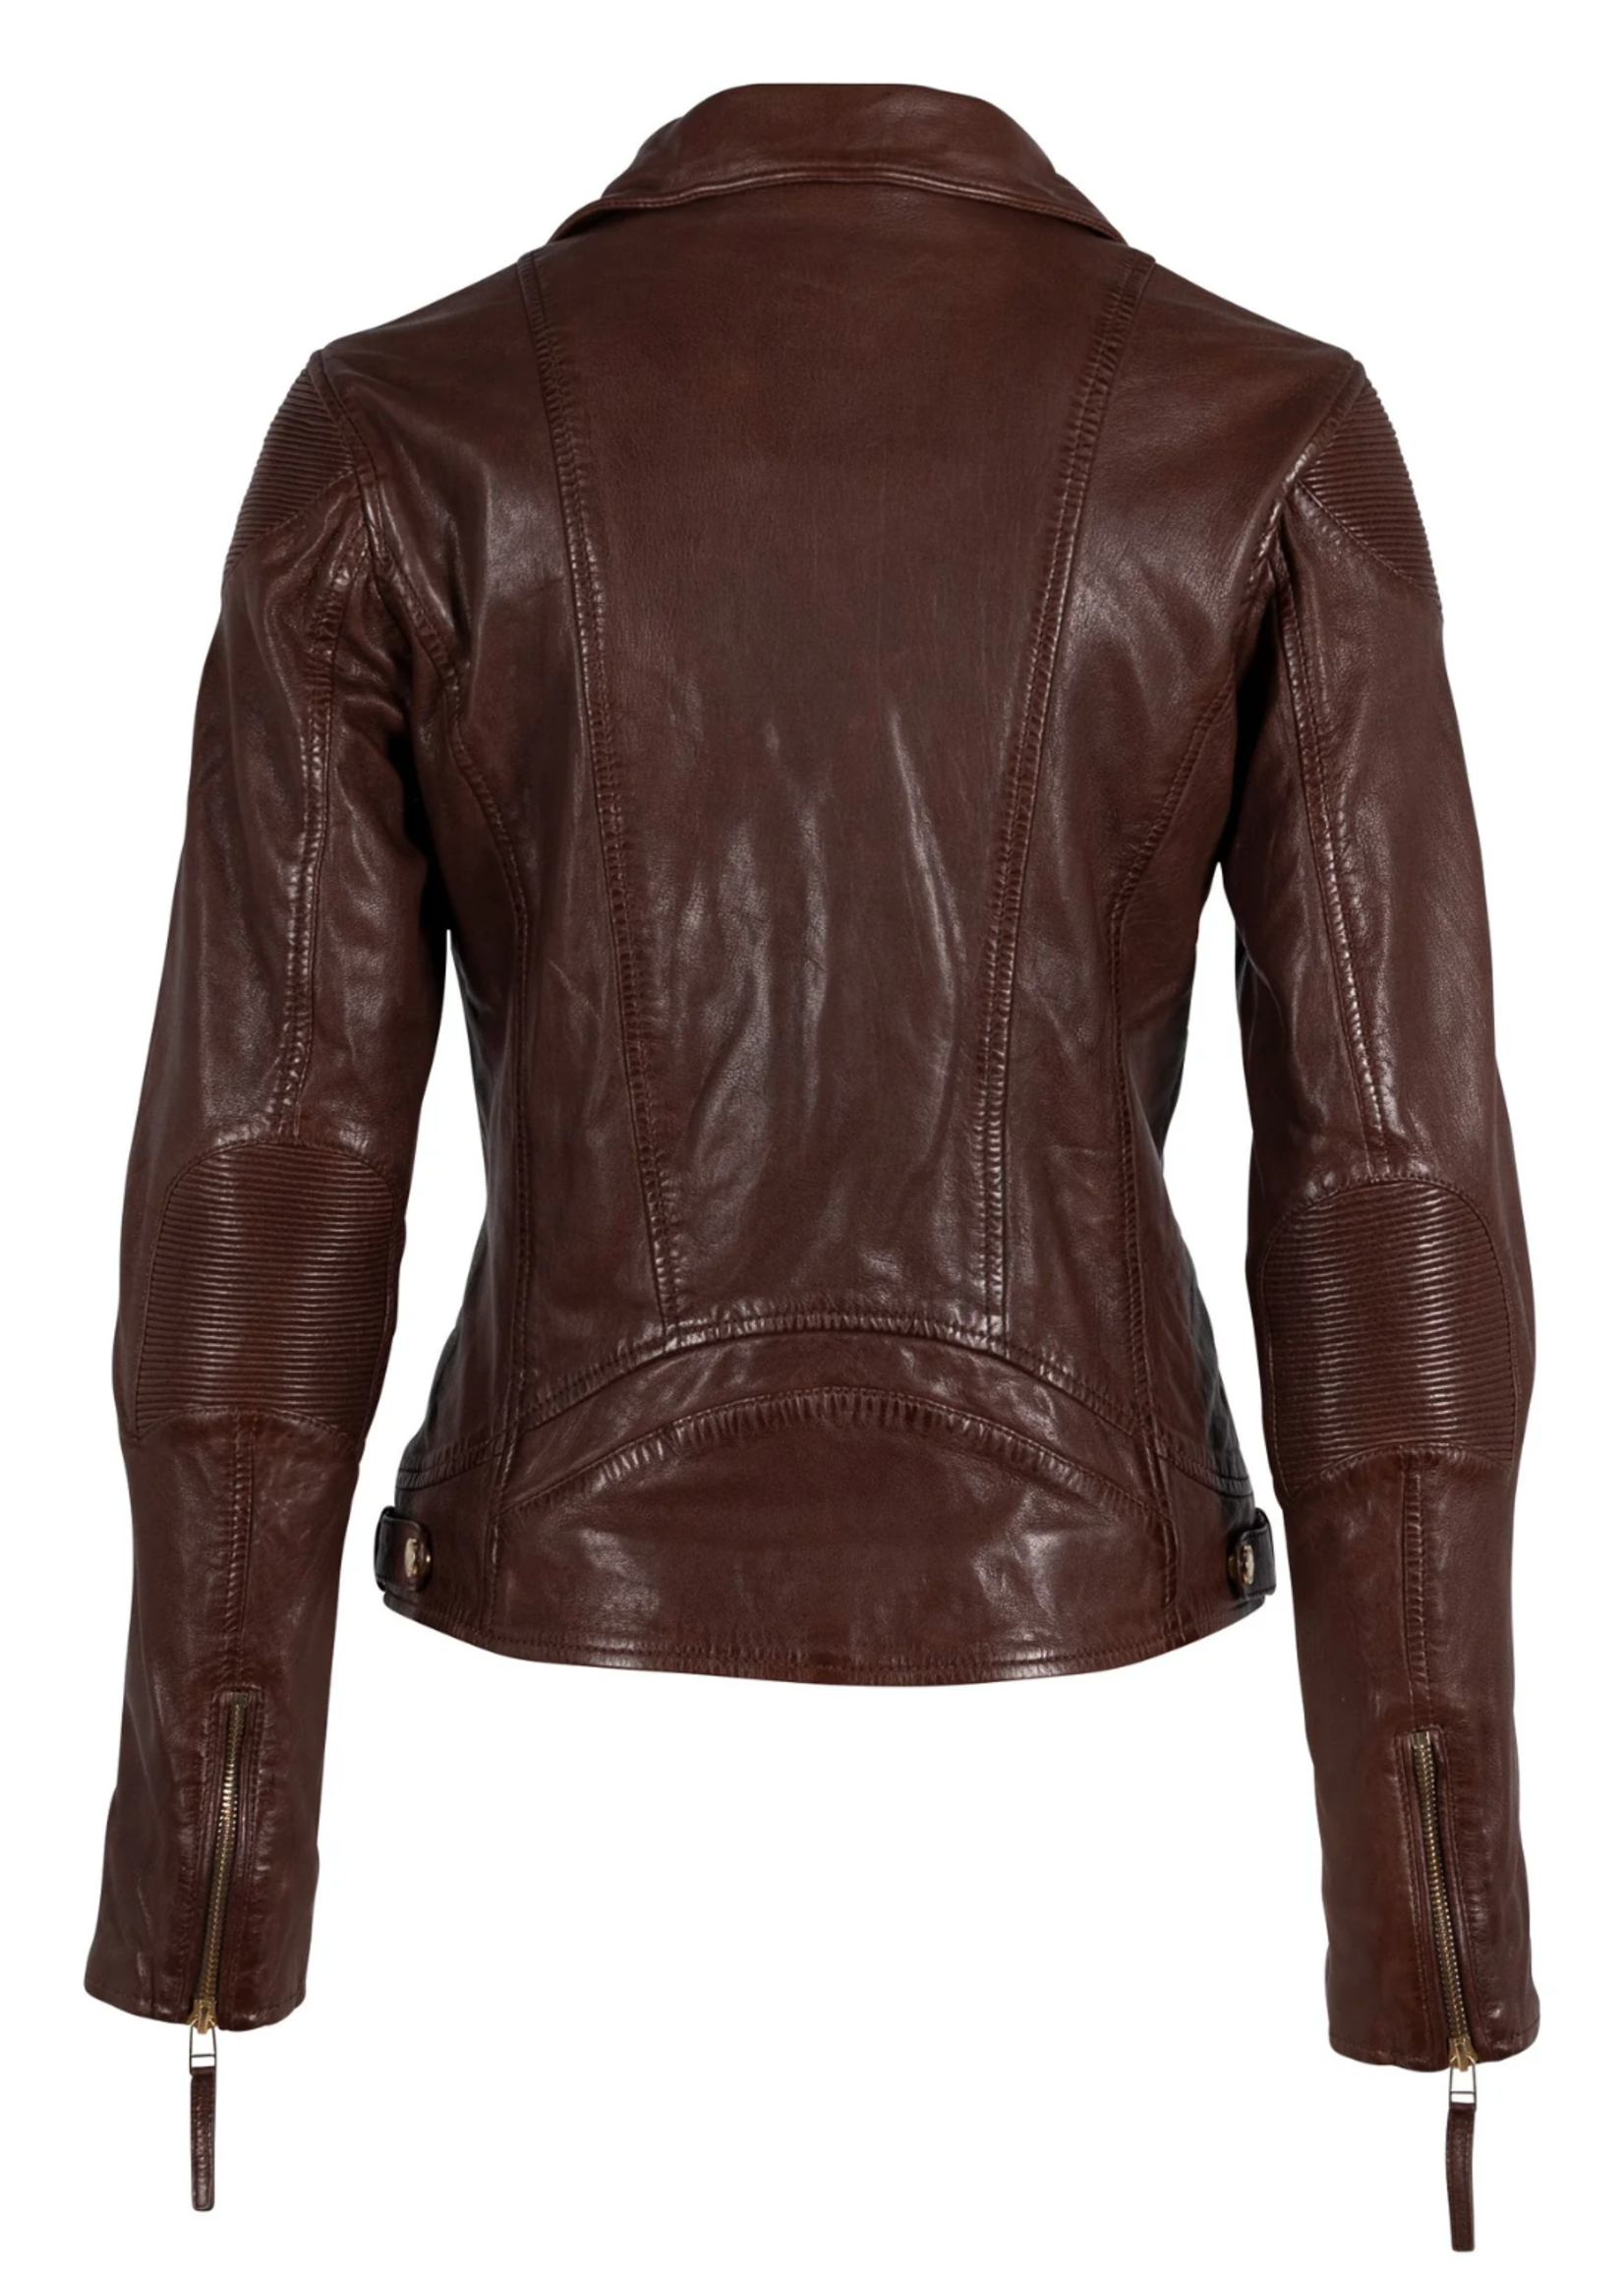 Mauritius Raizel Leather Jacket